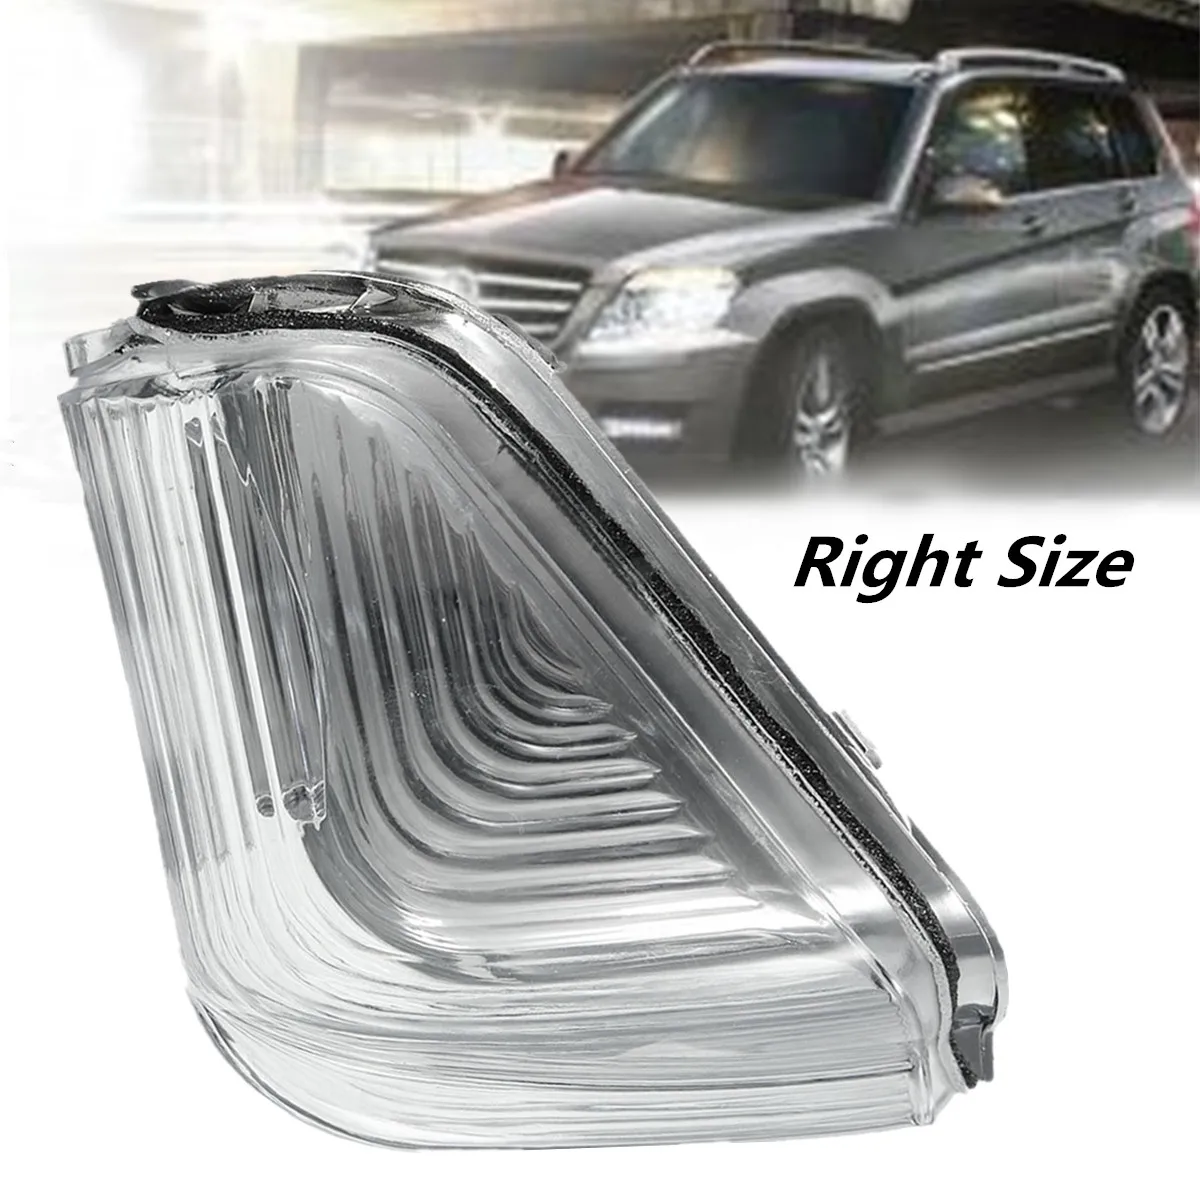 1 шт. правый/левый светодиодный передний индикаторы поворота боковое зеркало указатель поворота мигалка для Benz/Mercedes Sprinter/Dodge 2007 - Испускаемый цвет: Right